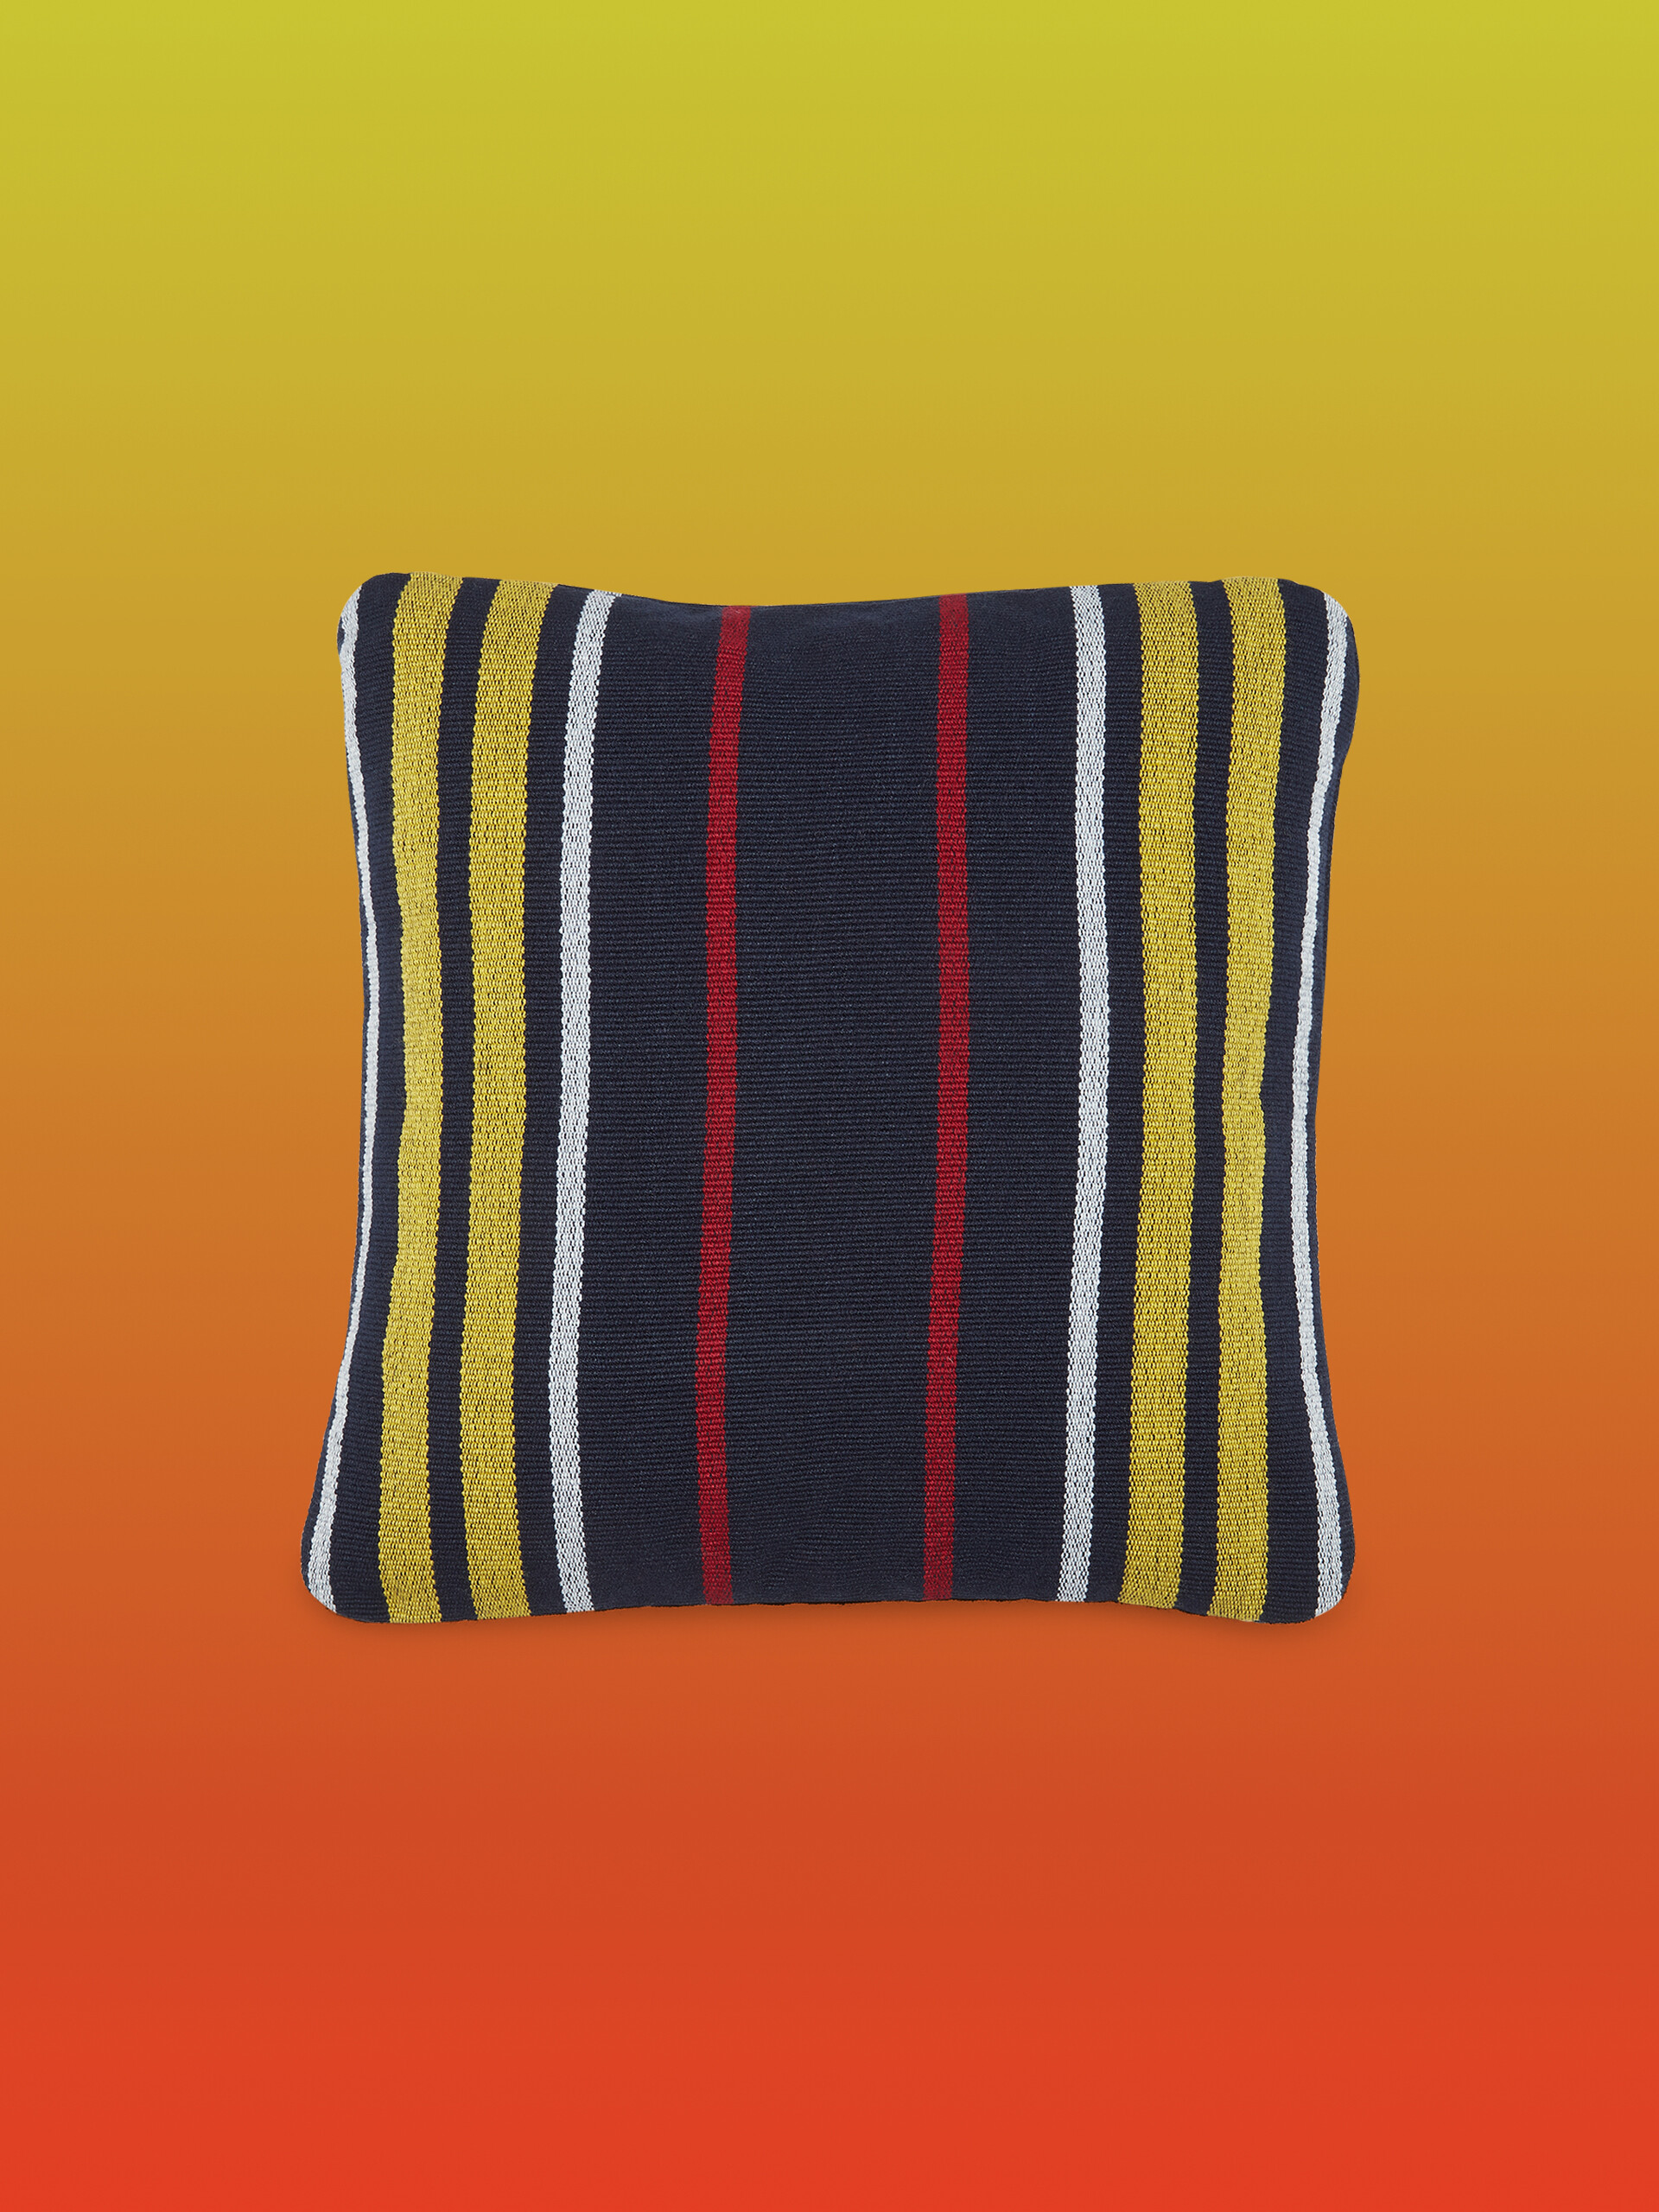 Fodera per cuscino quadrata MARNI MARKET in poliestere nero giallo e rosso - Arredamento - Image 1